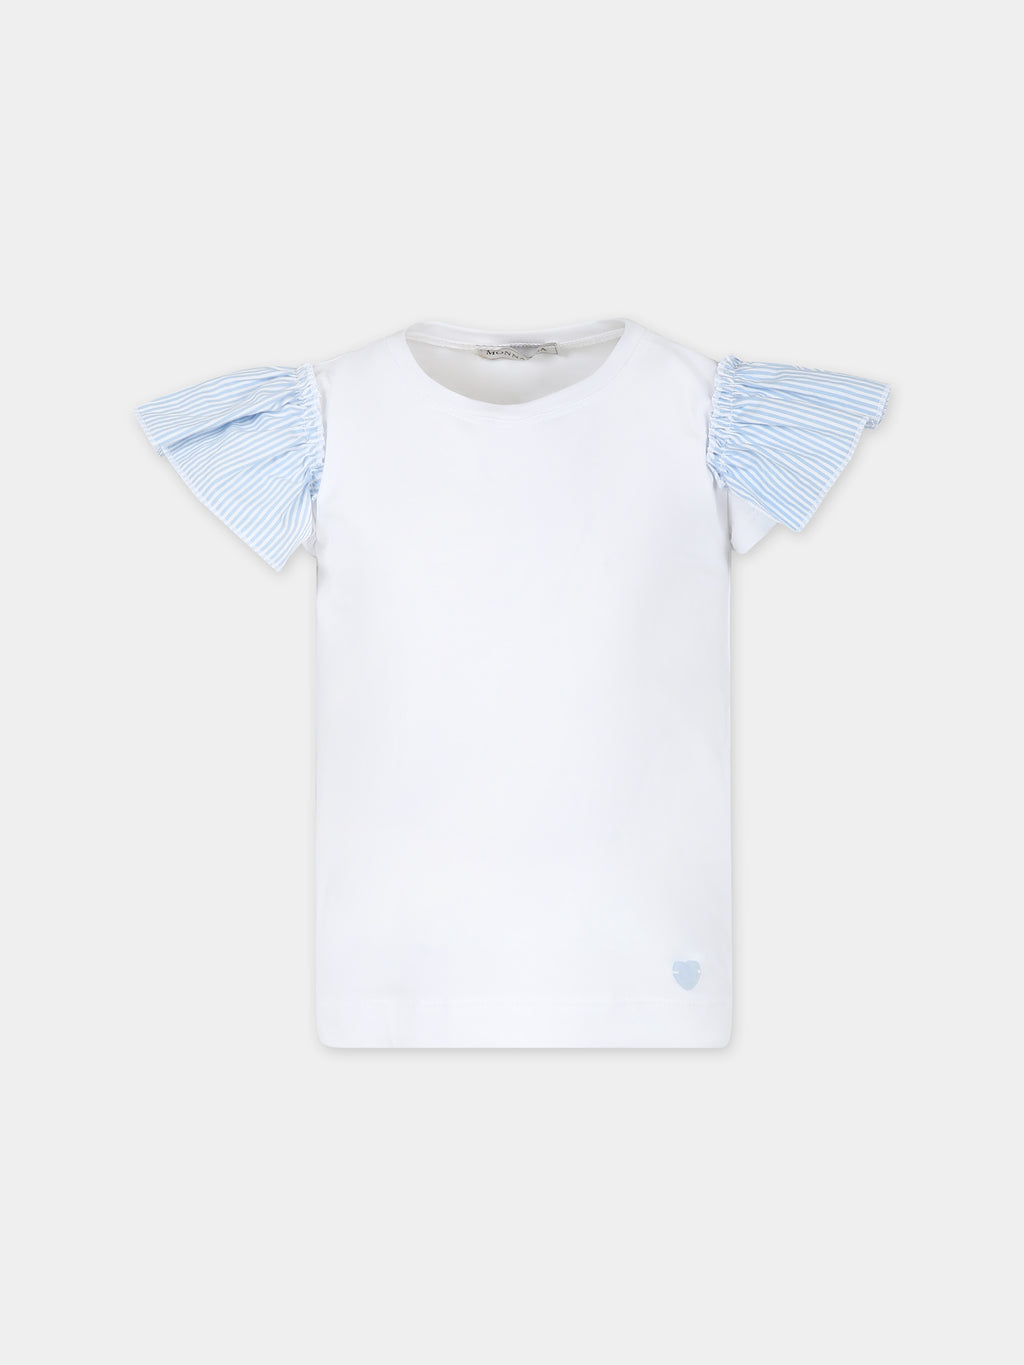 T-shirt bianca per bambina con cuore celeste